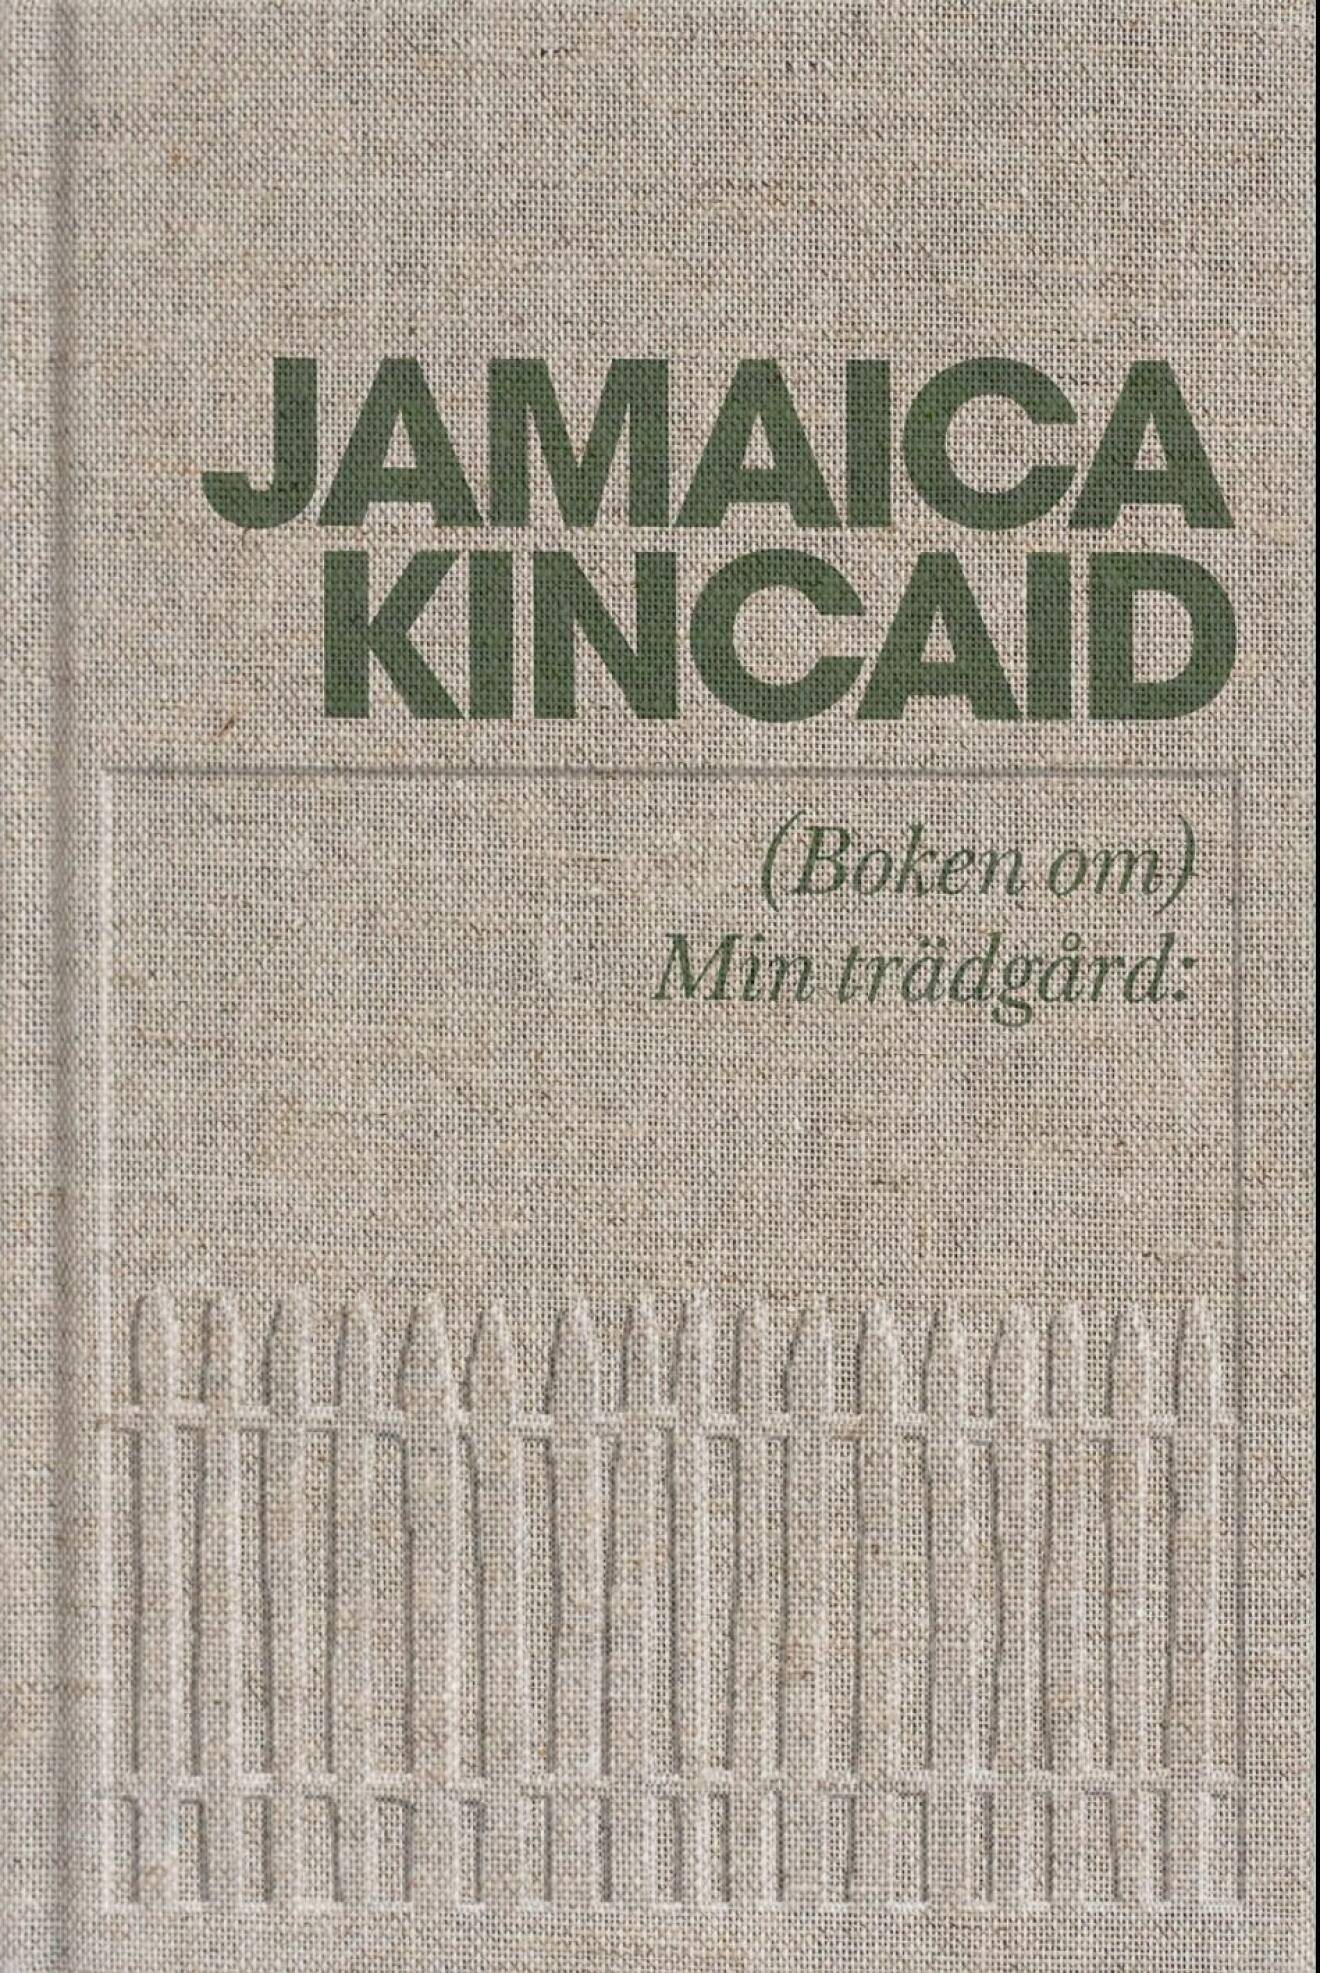 Min trädgård Jamaica Kincaid